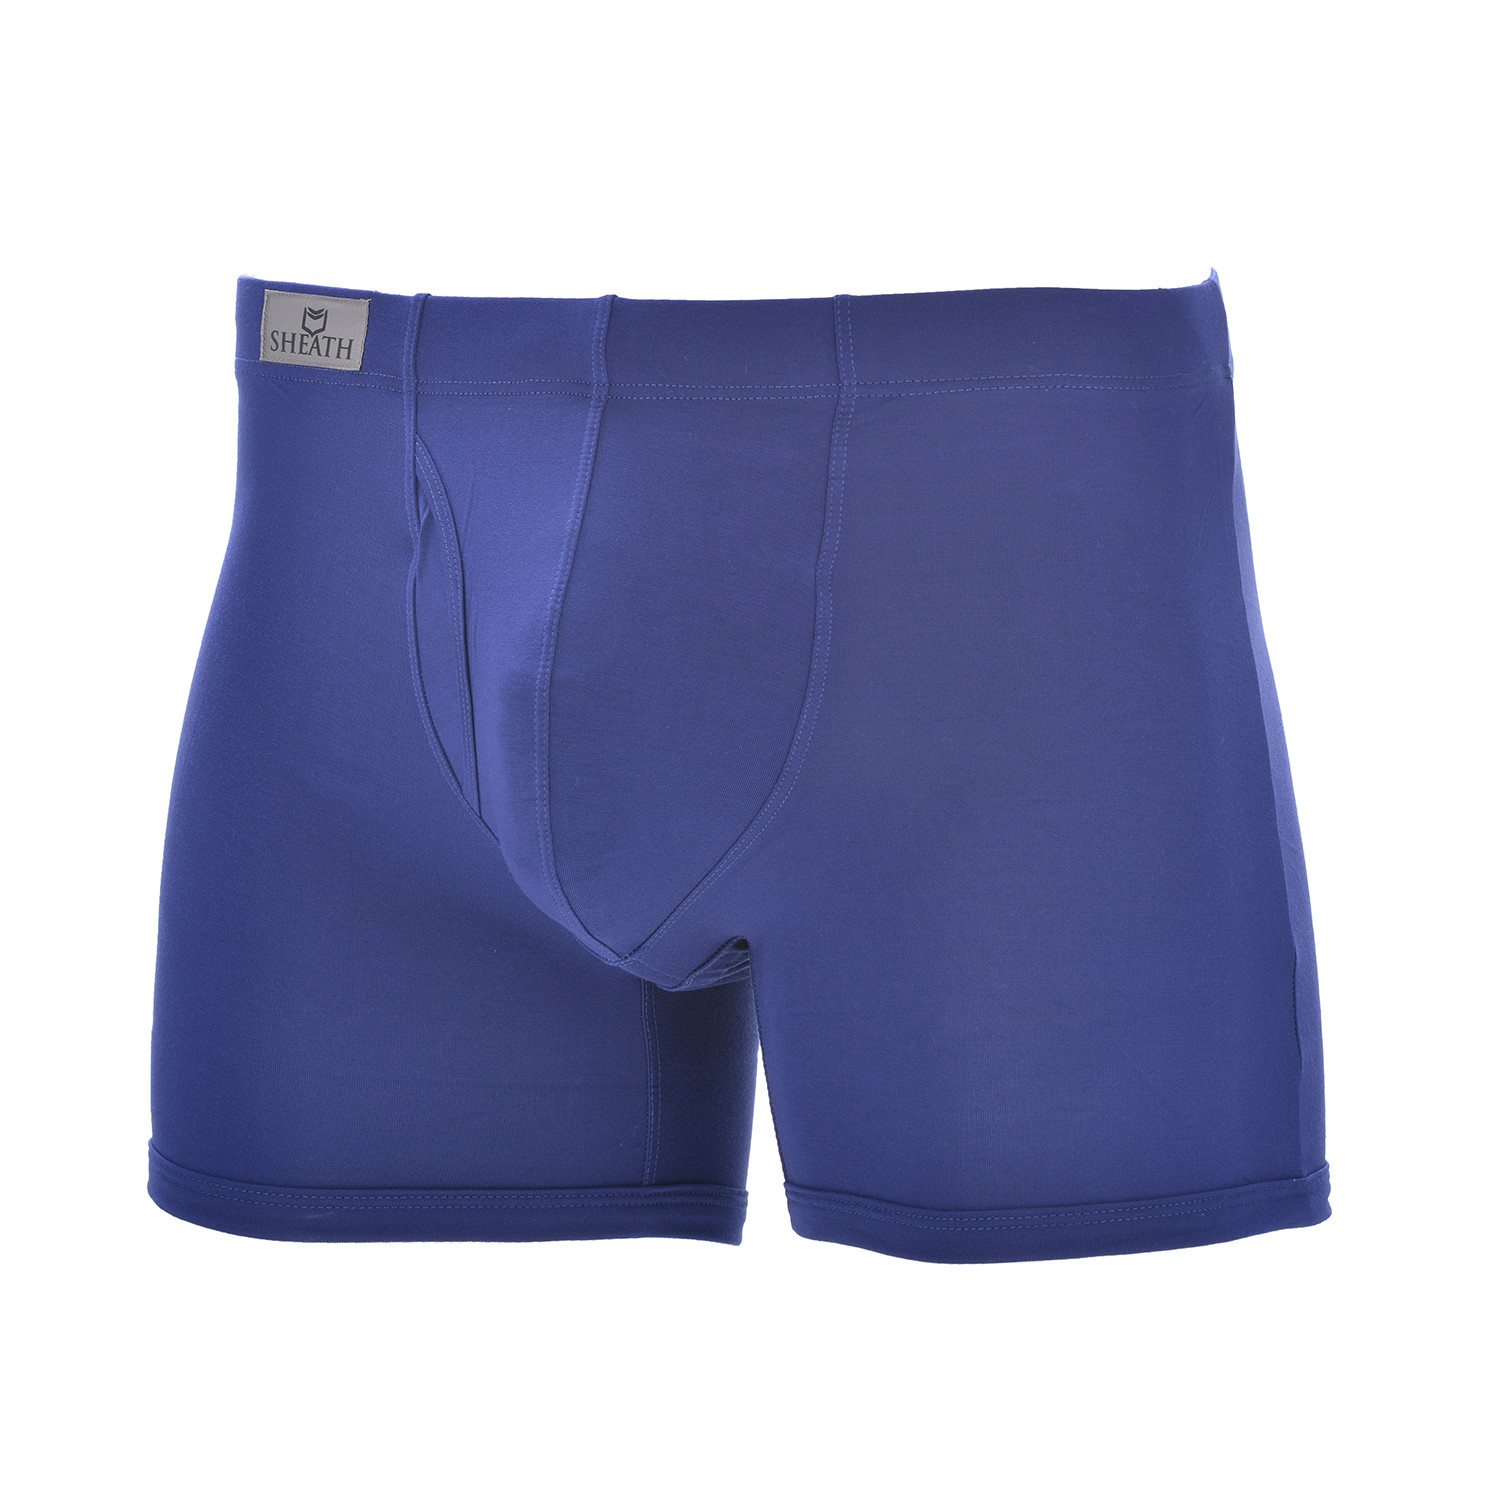 Sheath 3.21 // Dual Pouch Fly Underwear // Navy (X-Large) - Sheath ...